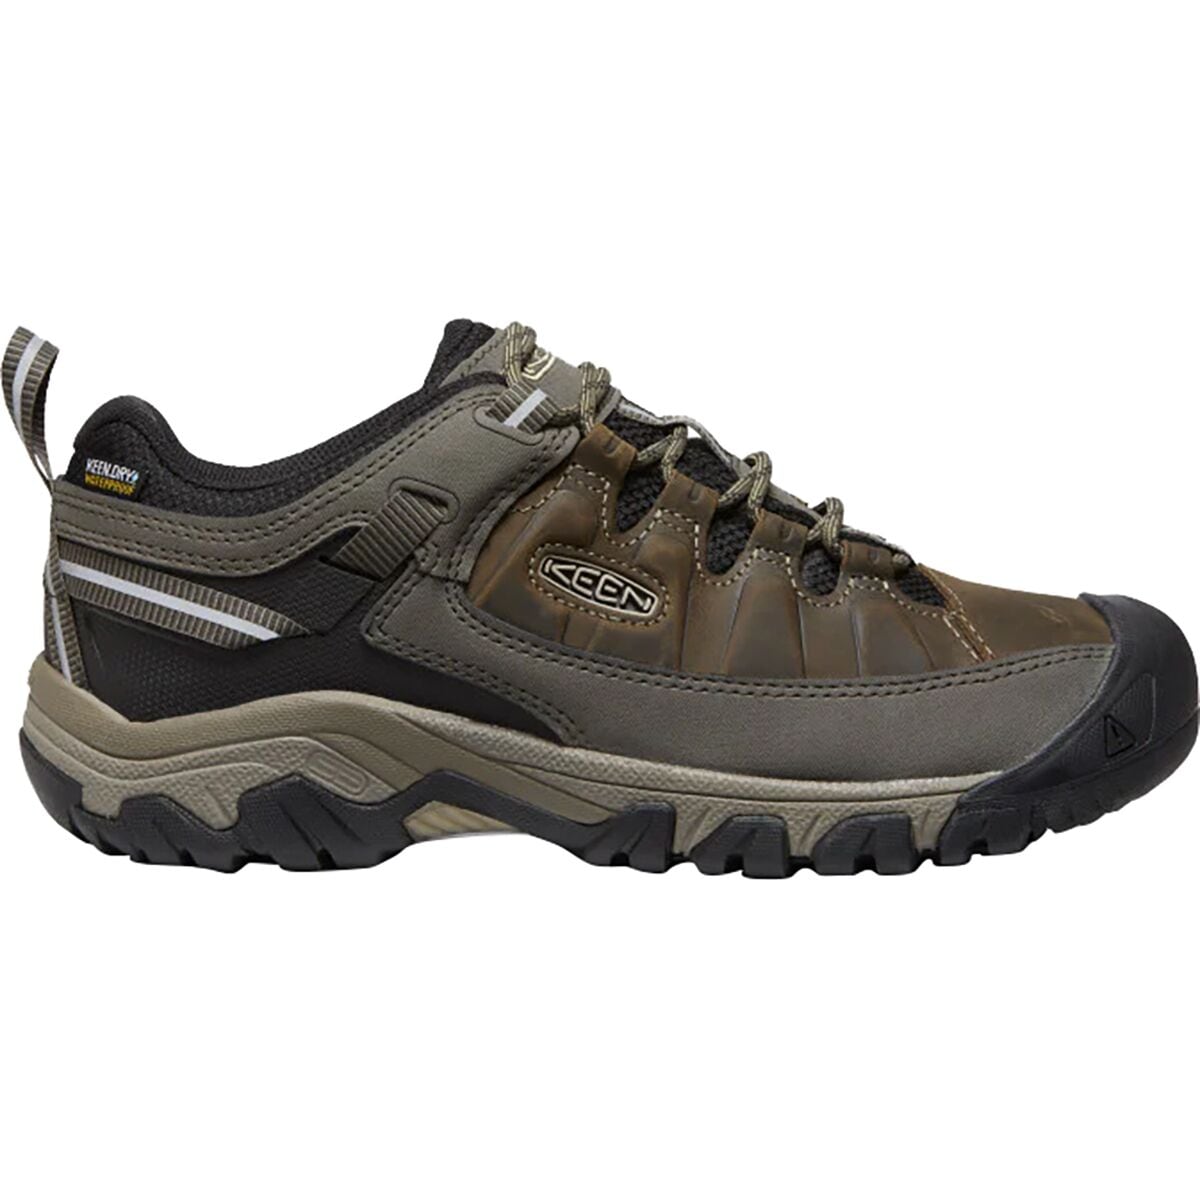 KEEN Targhee III Waterproof Leather Wide Hiking Shoe - Men's -  191190082102